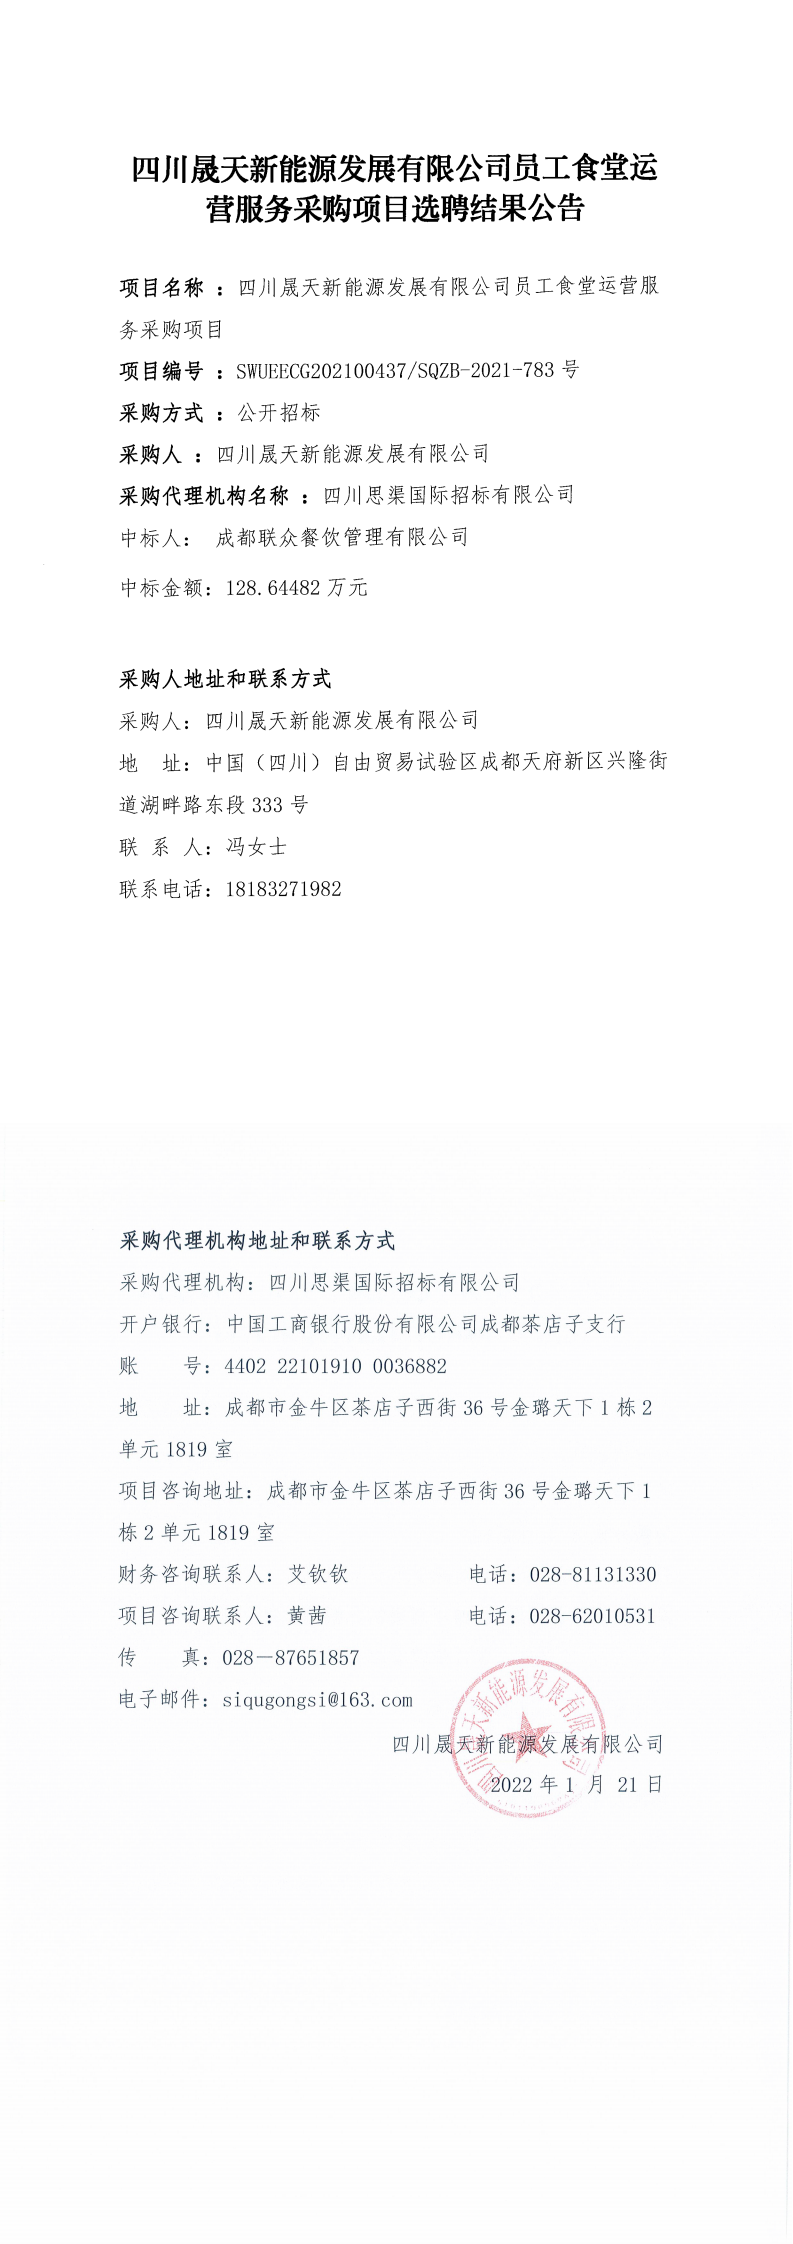 四川晟天新能源发展有限公司员工食堂运营服务采购项目选聘结果公告_0.png